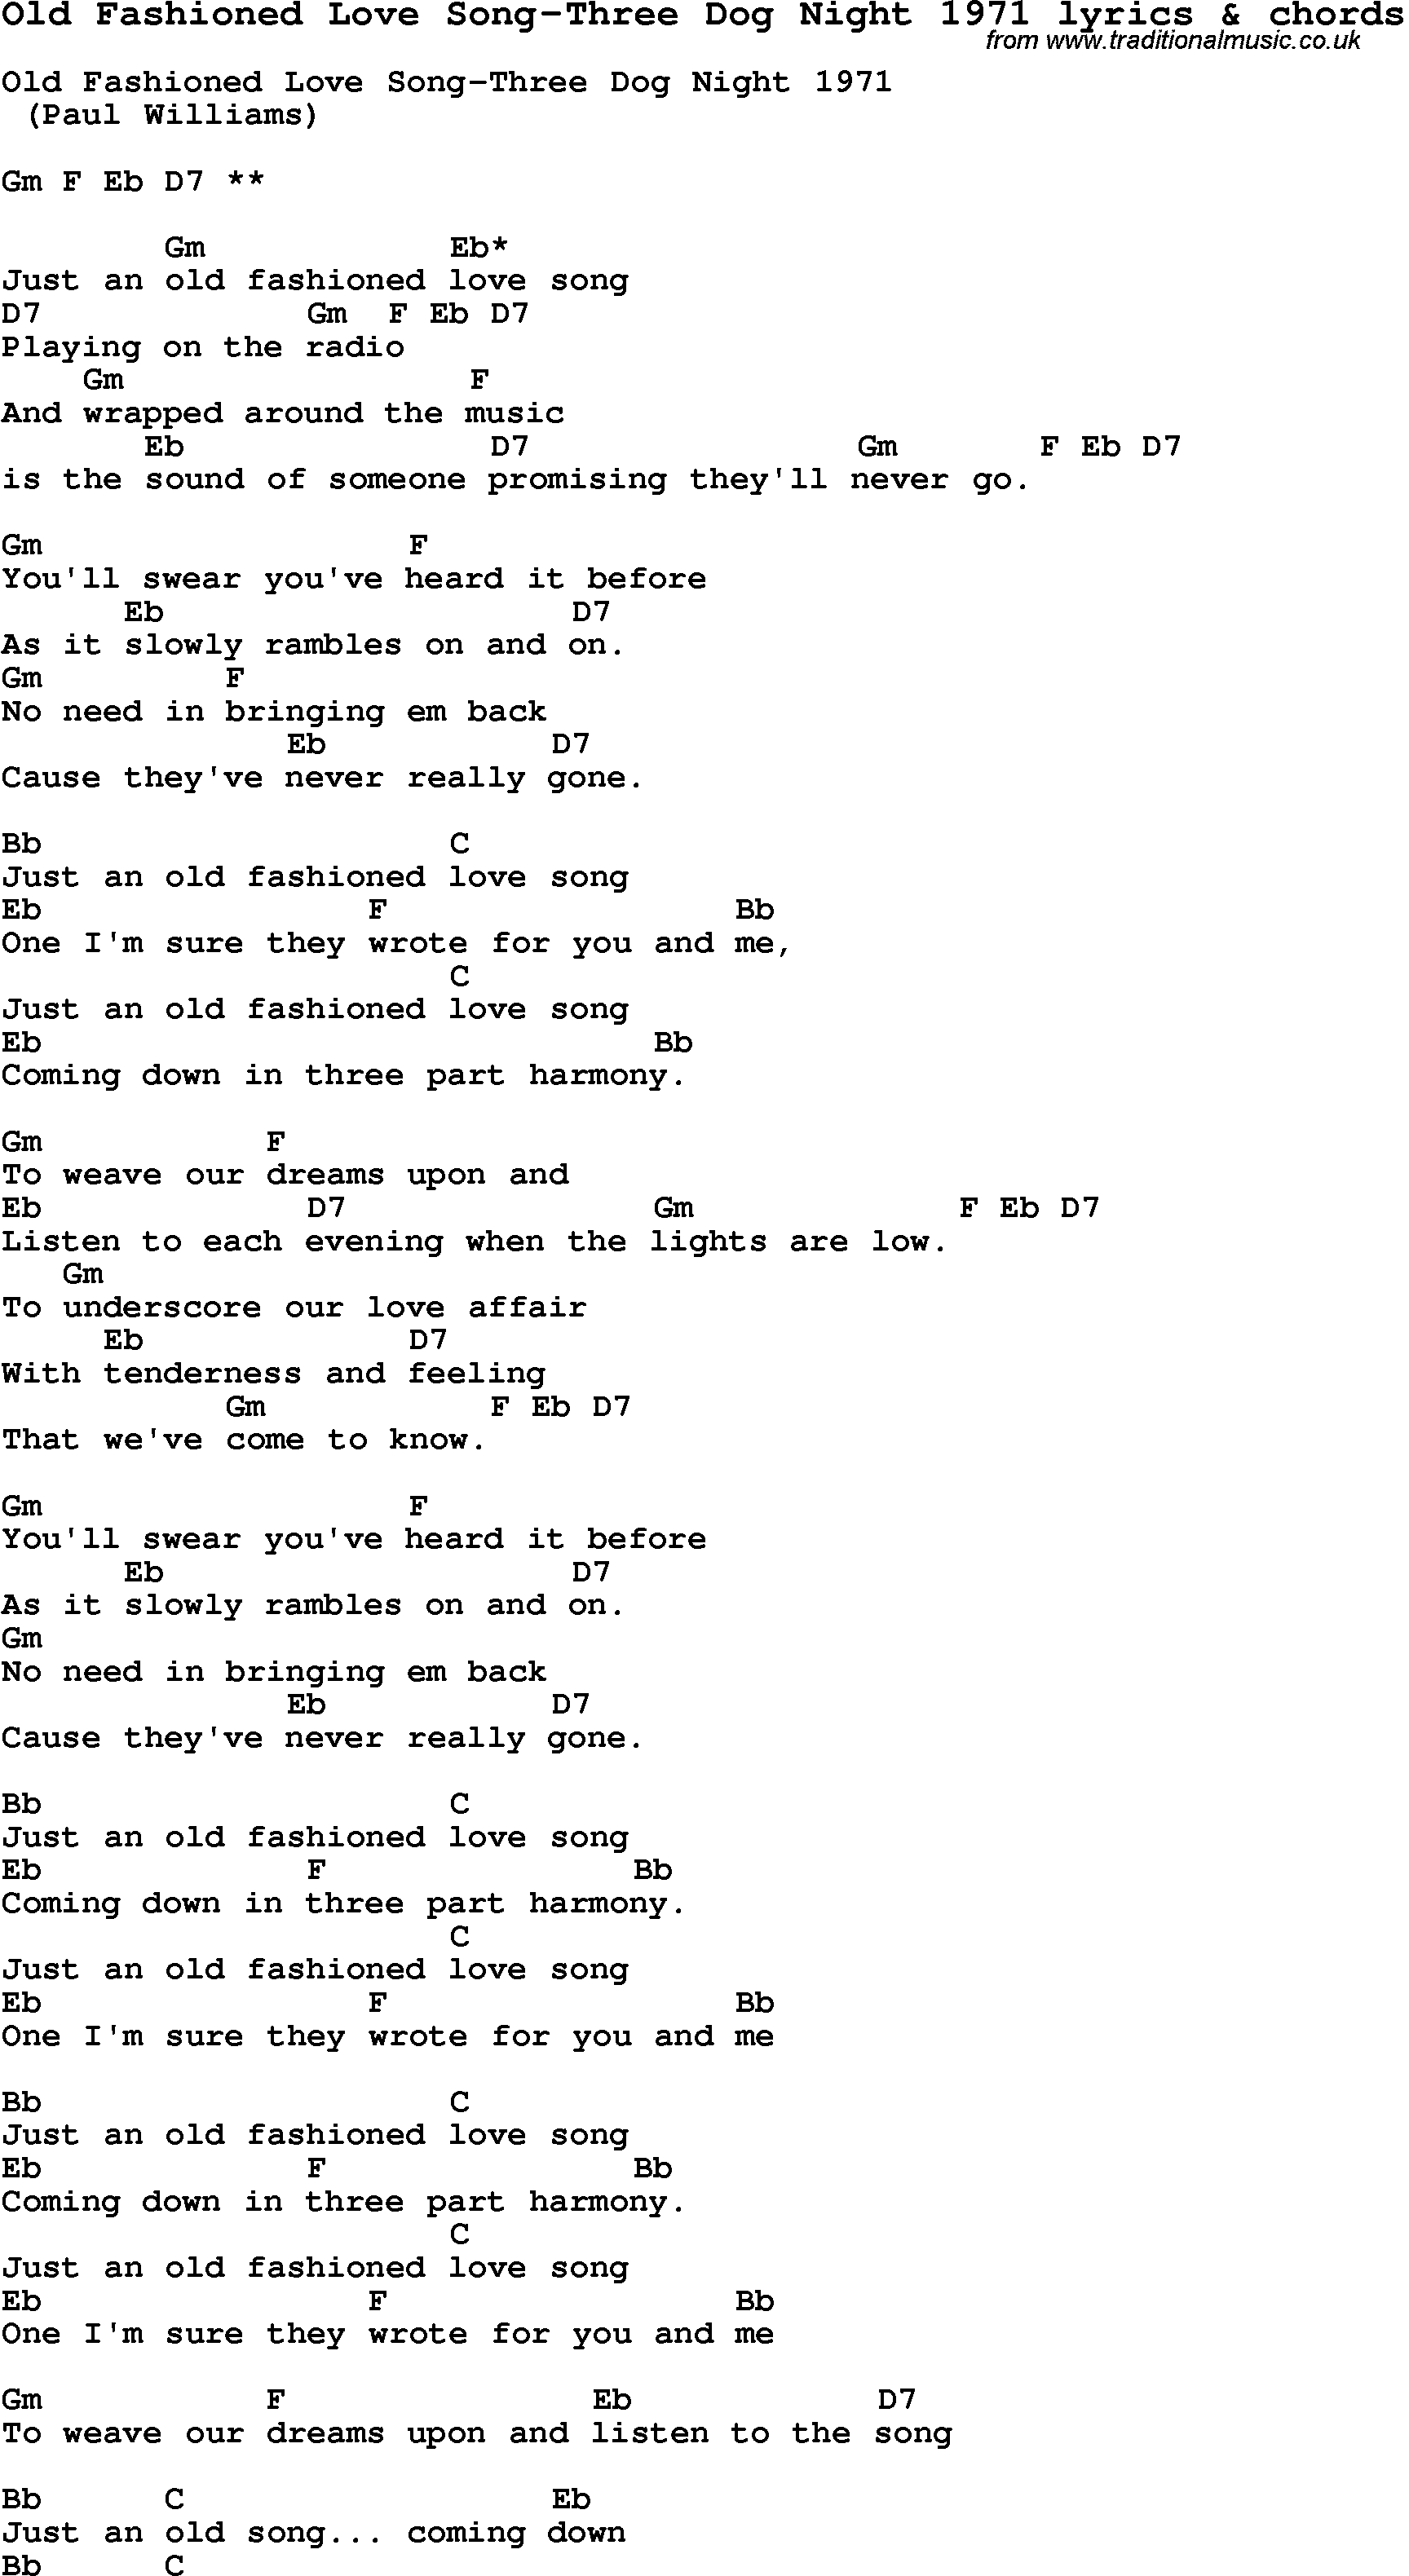 Old Fashion Love Song Lyrics Three Dog Night